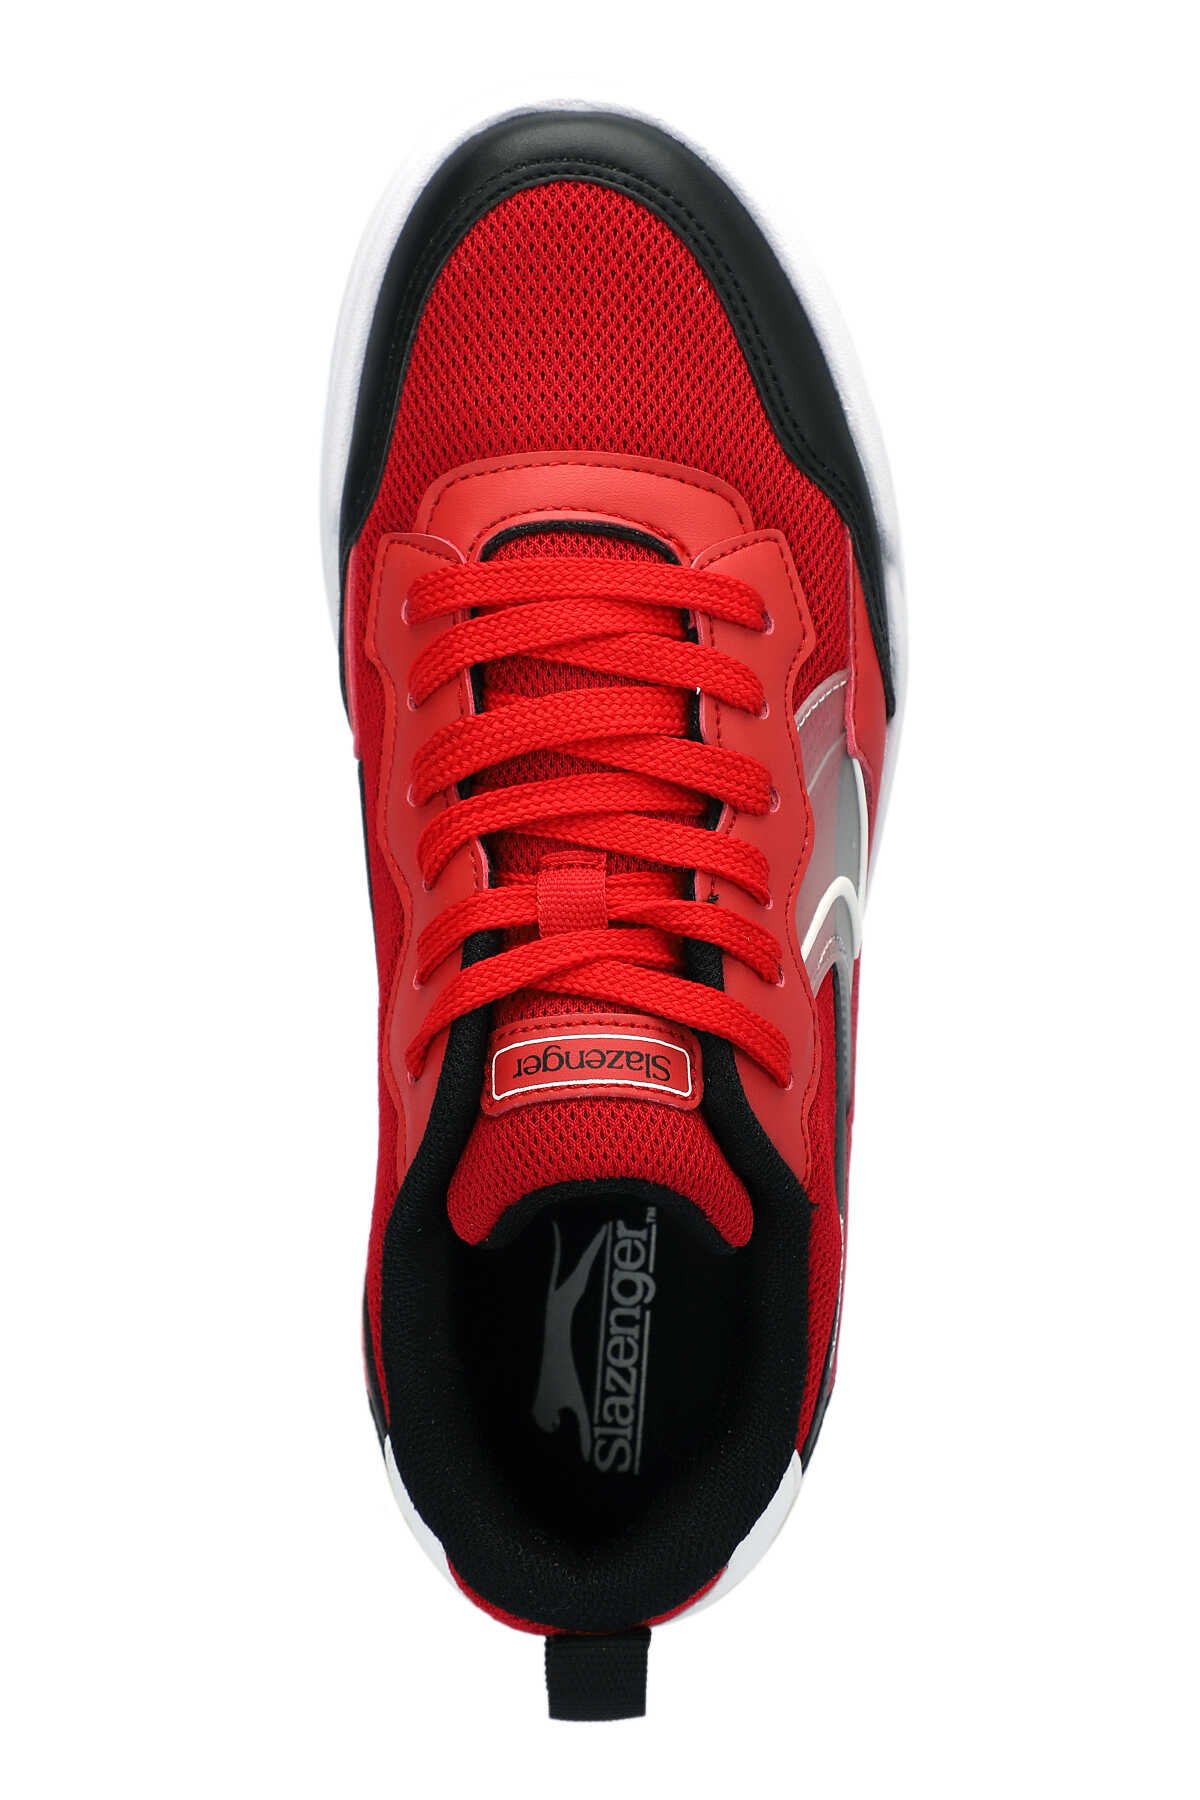 BARBRO Sneaker Kadın Ayakkabı Kırmızı